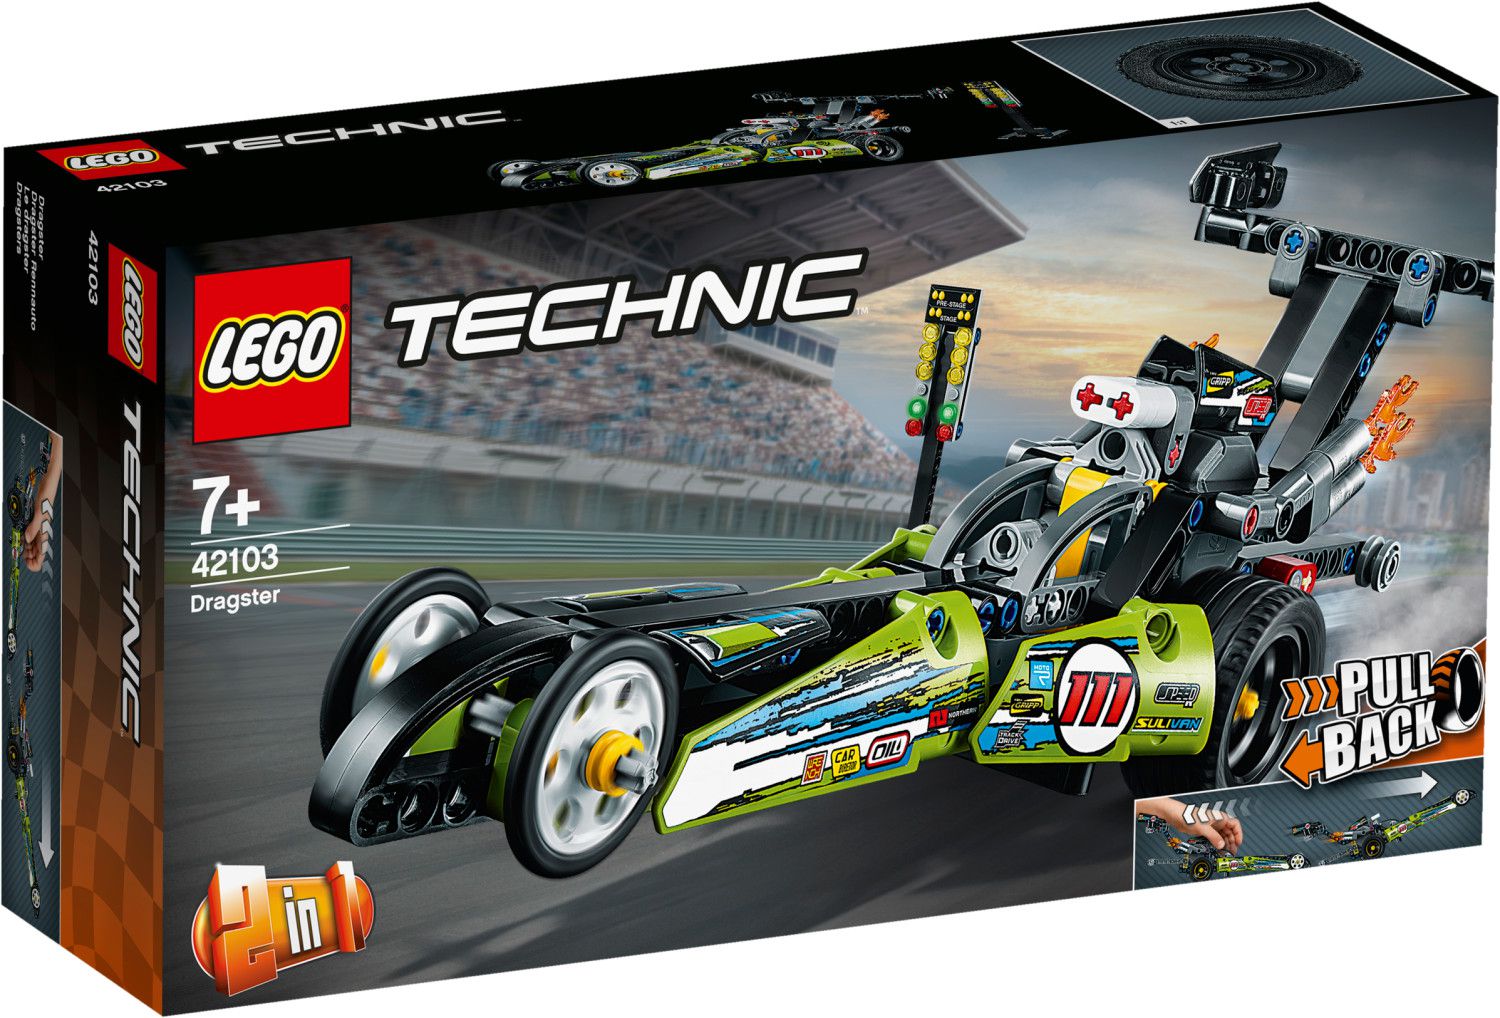 bücher.de: 20% Rabatt auf Spielzeug   z.B. LEGO Technic 42103 Dragster Rennauto für 11,99€ (statt 15€)